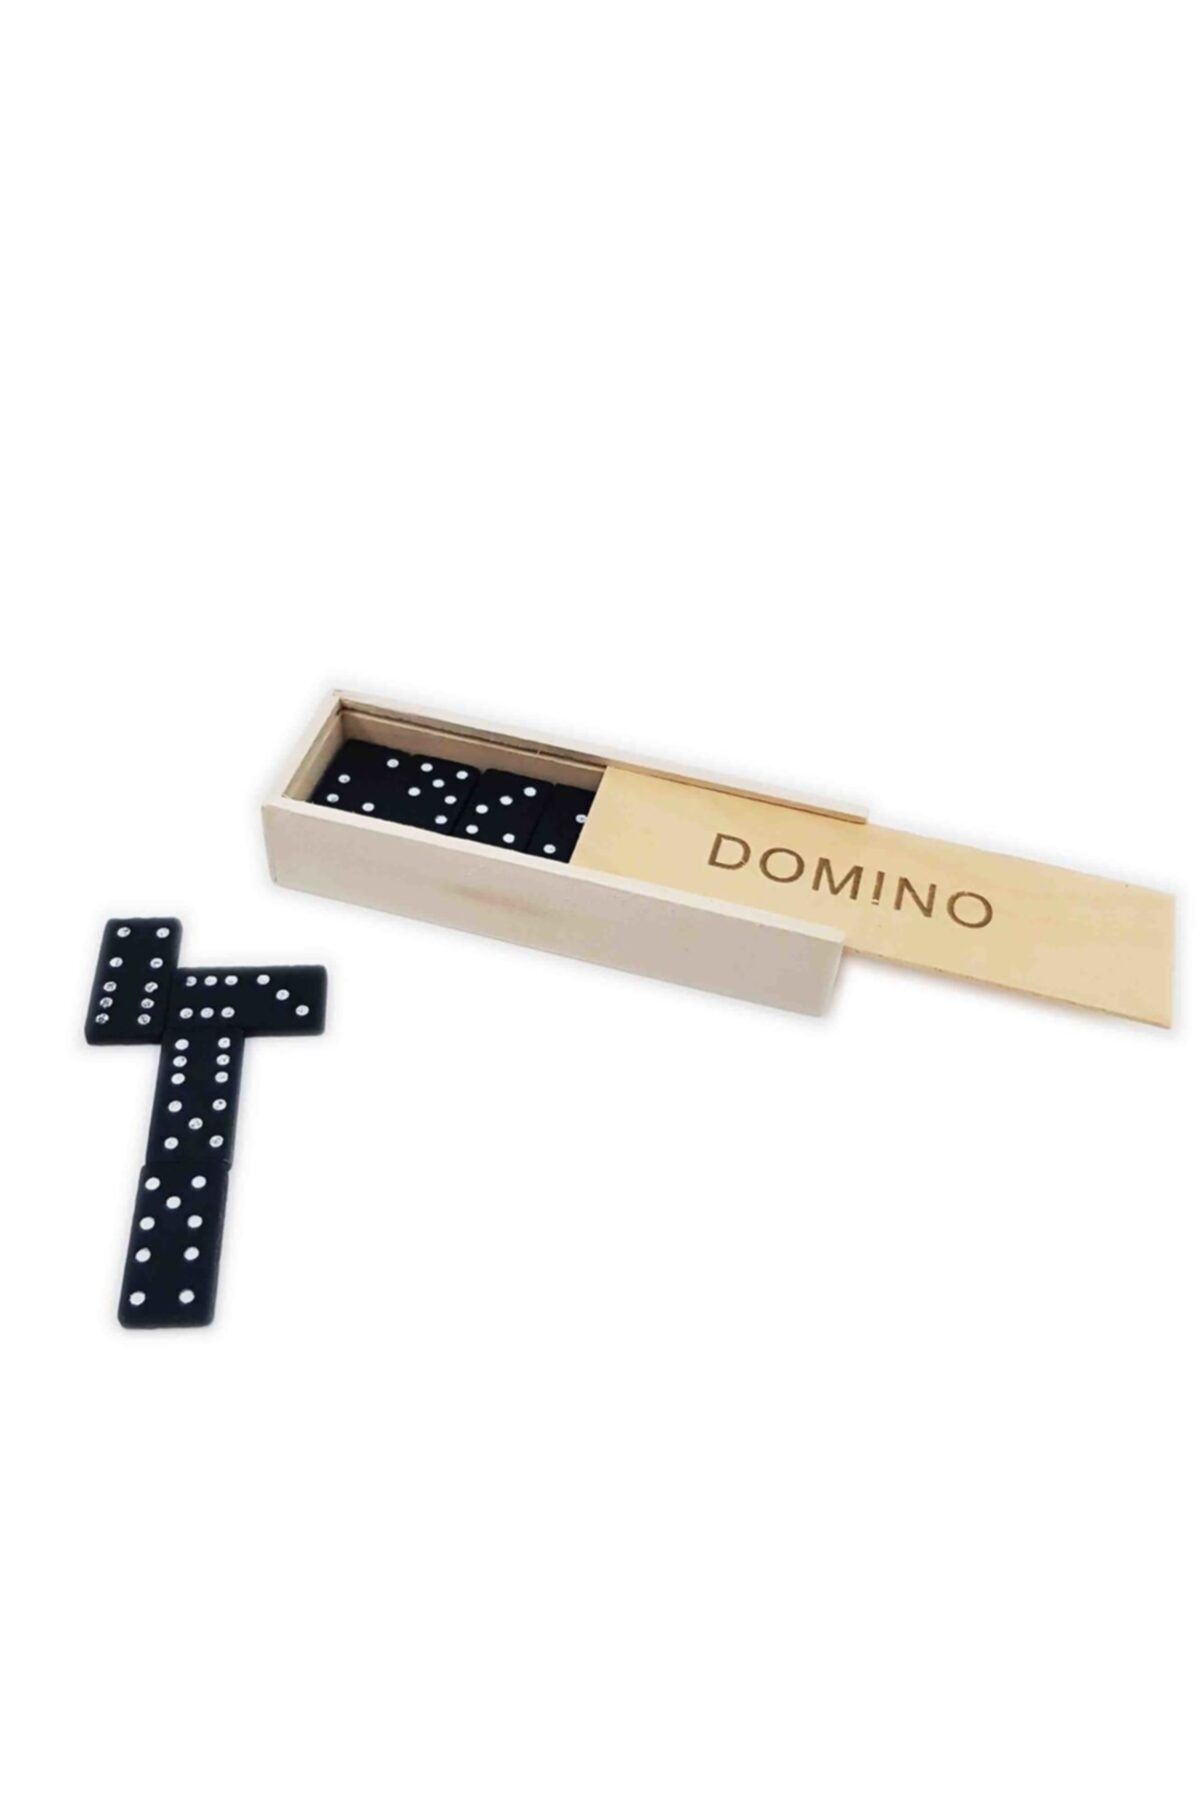 domino Ahşap Domino Taşı